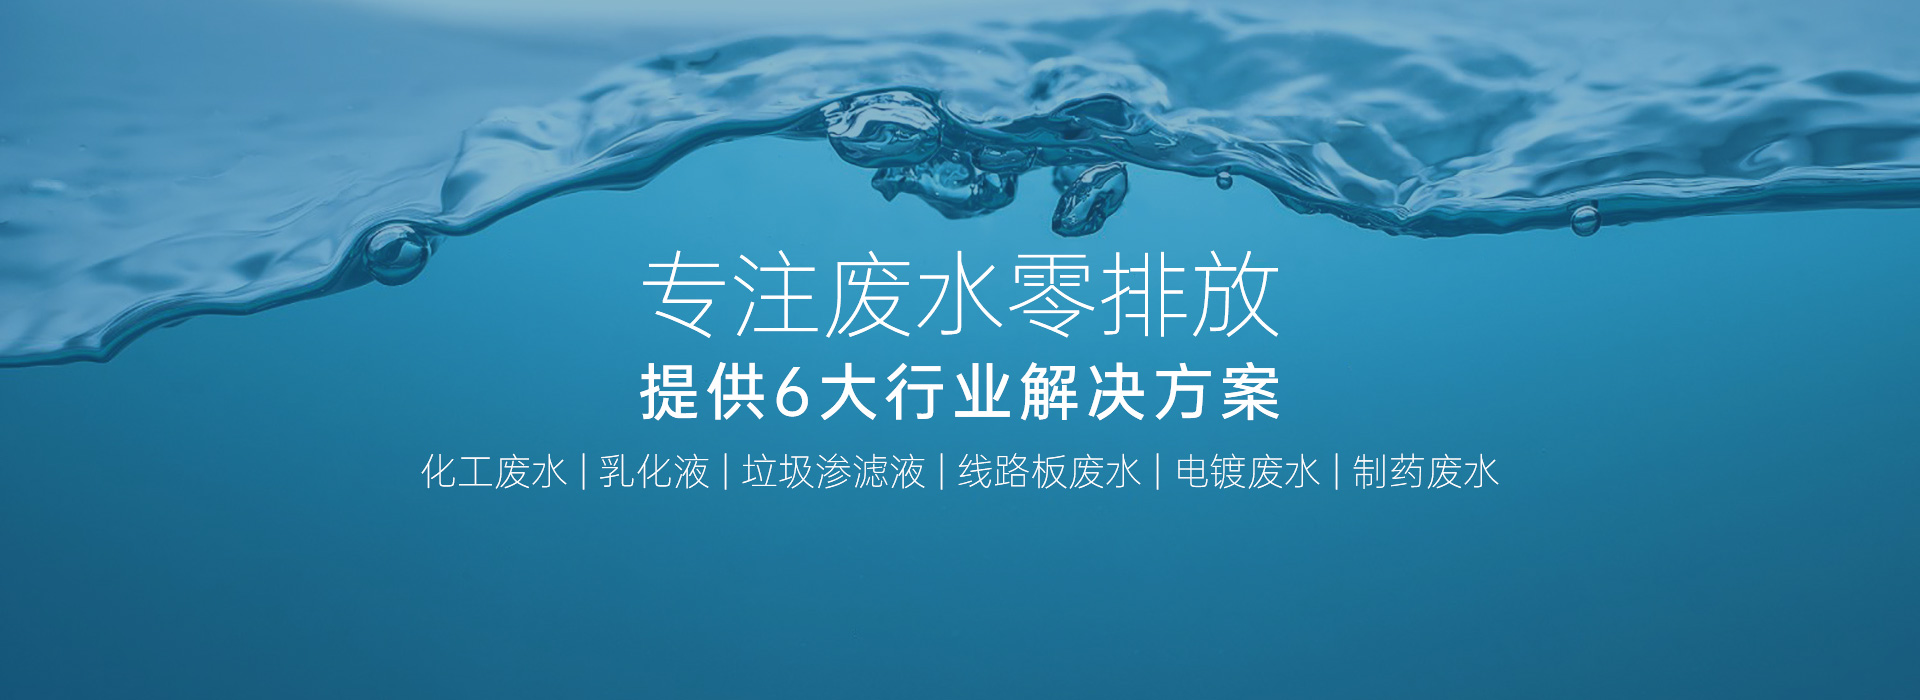 迈源科技携系列创新成果震撼亮相上海环博会